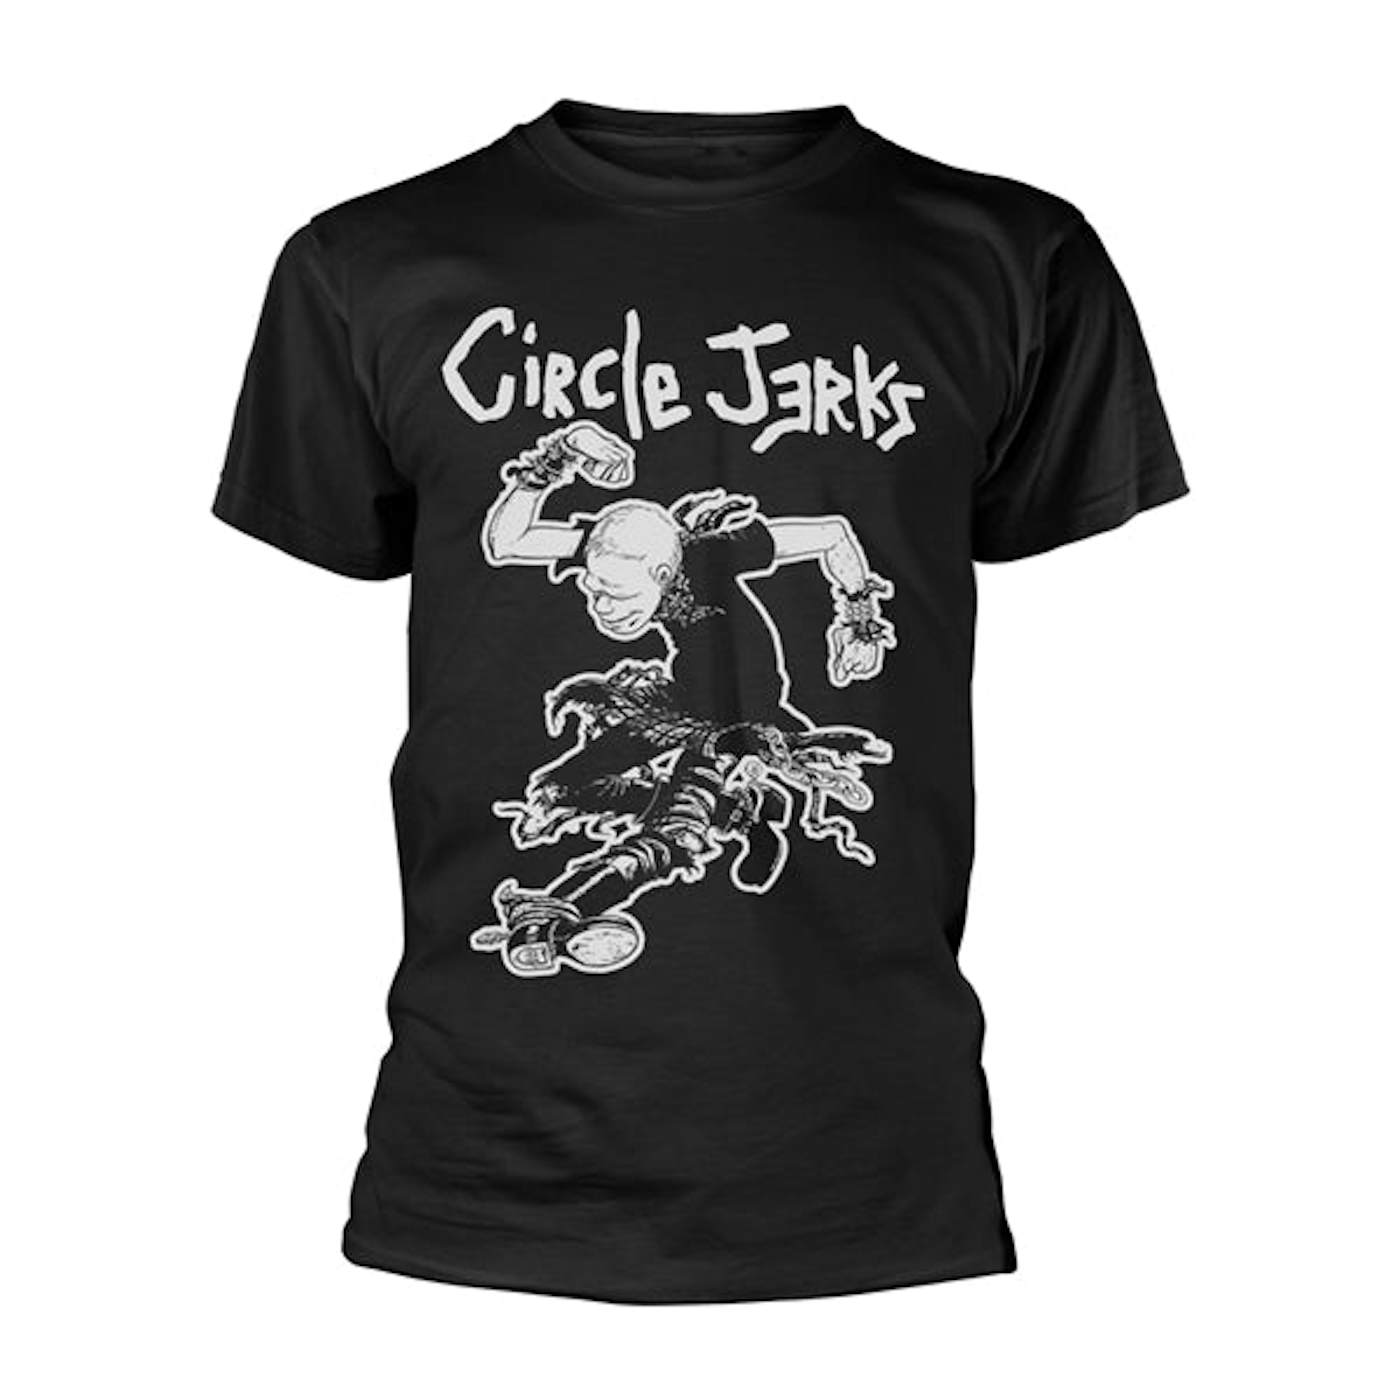 Circle Jerks T Shirt - I'm Gonna Live (Black)